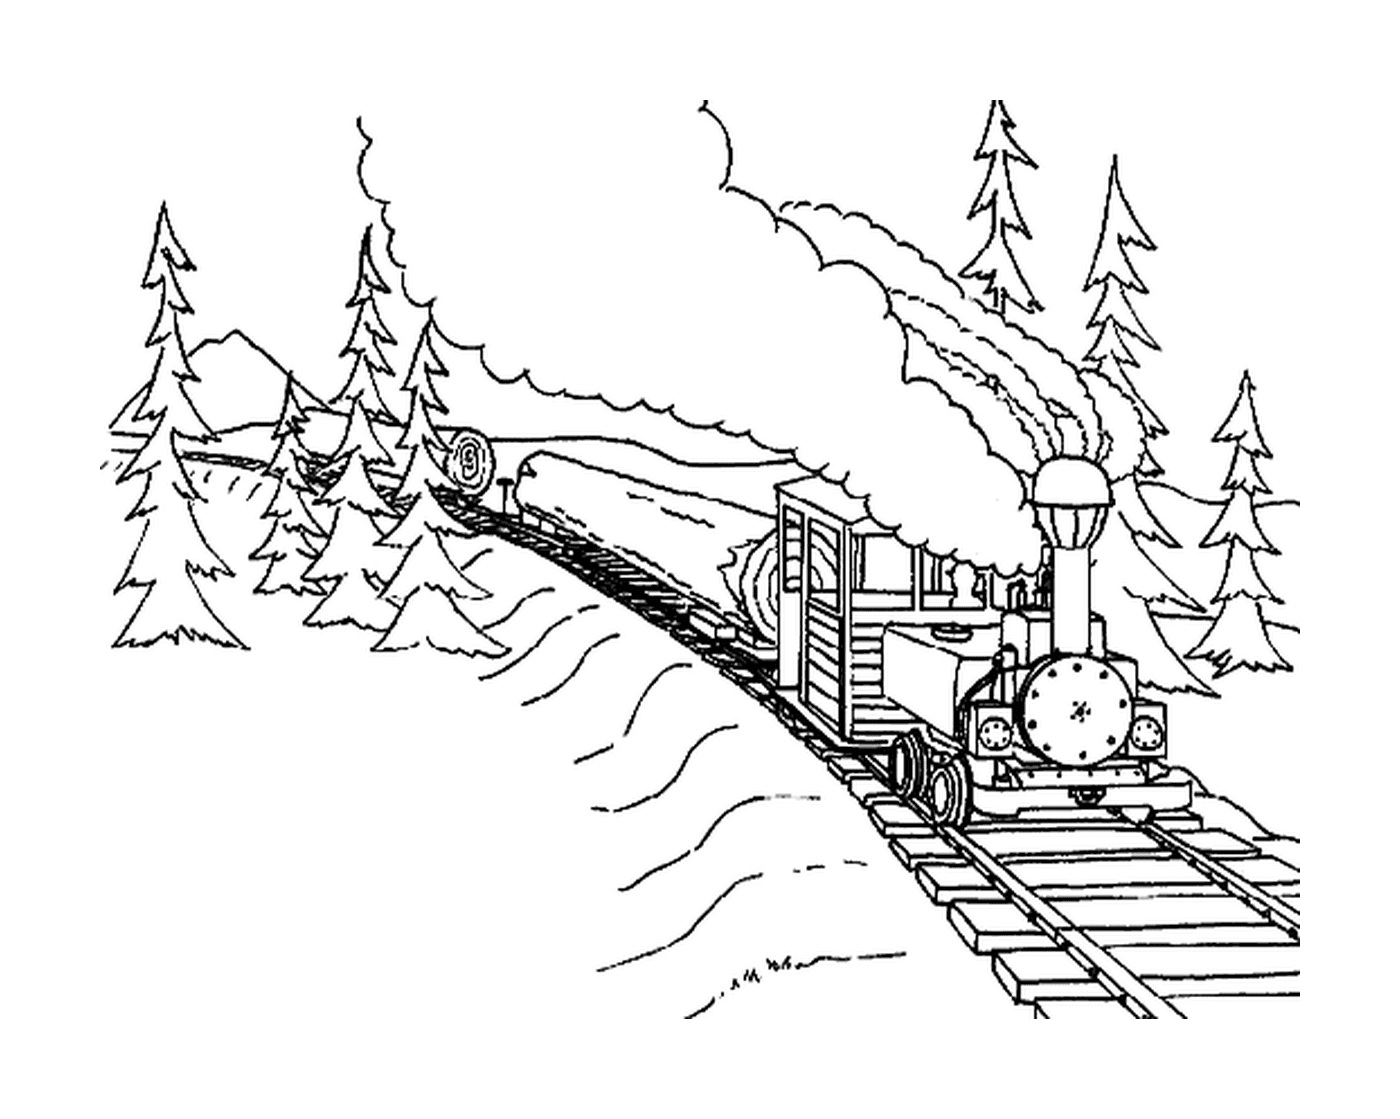  Un treno che trasporta tronchi di alberi 